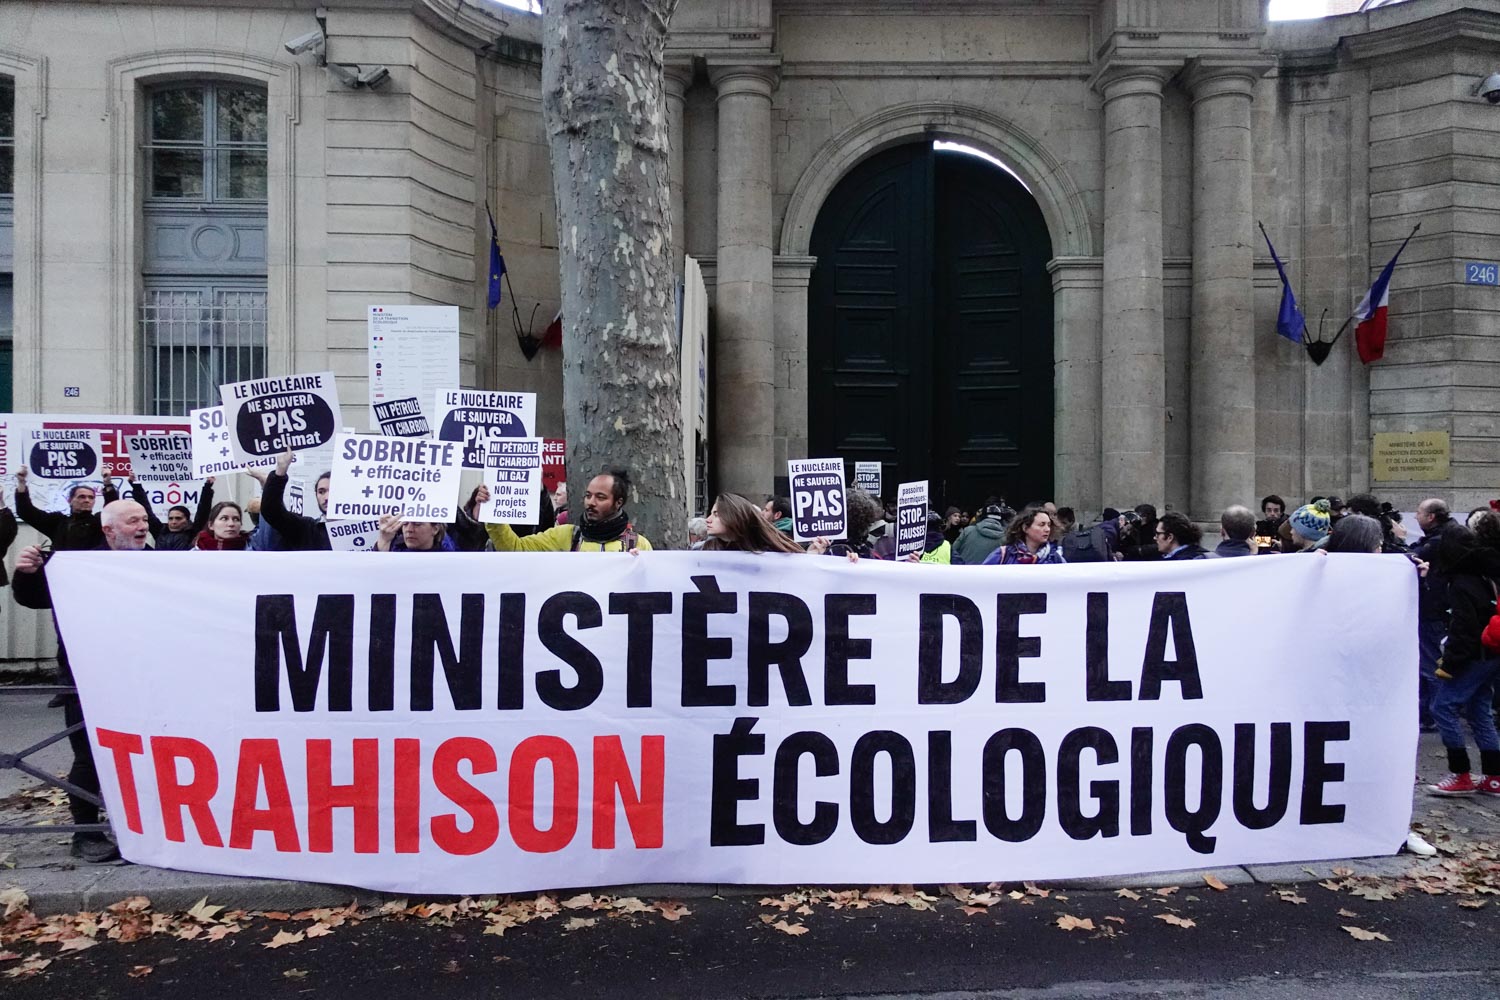 Devant la porte du ministère de la Transition écologique, grande banderole "ministère de la trahison écologique" et des dizaines de militants derrière